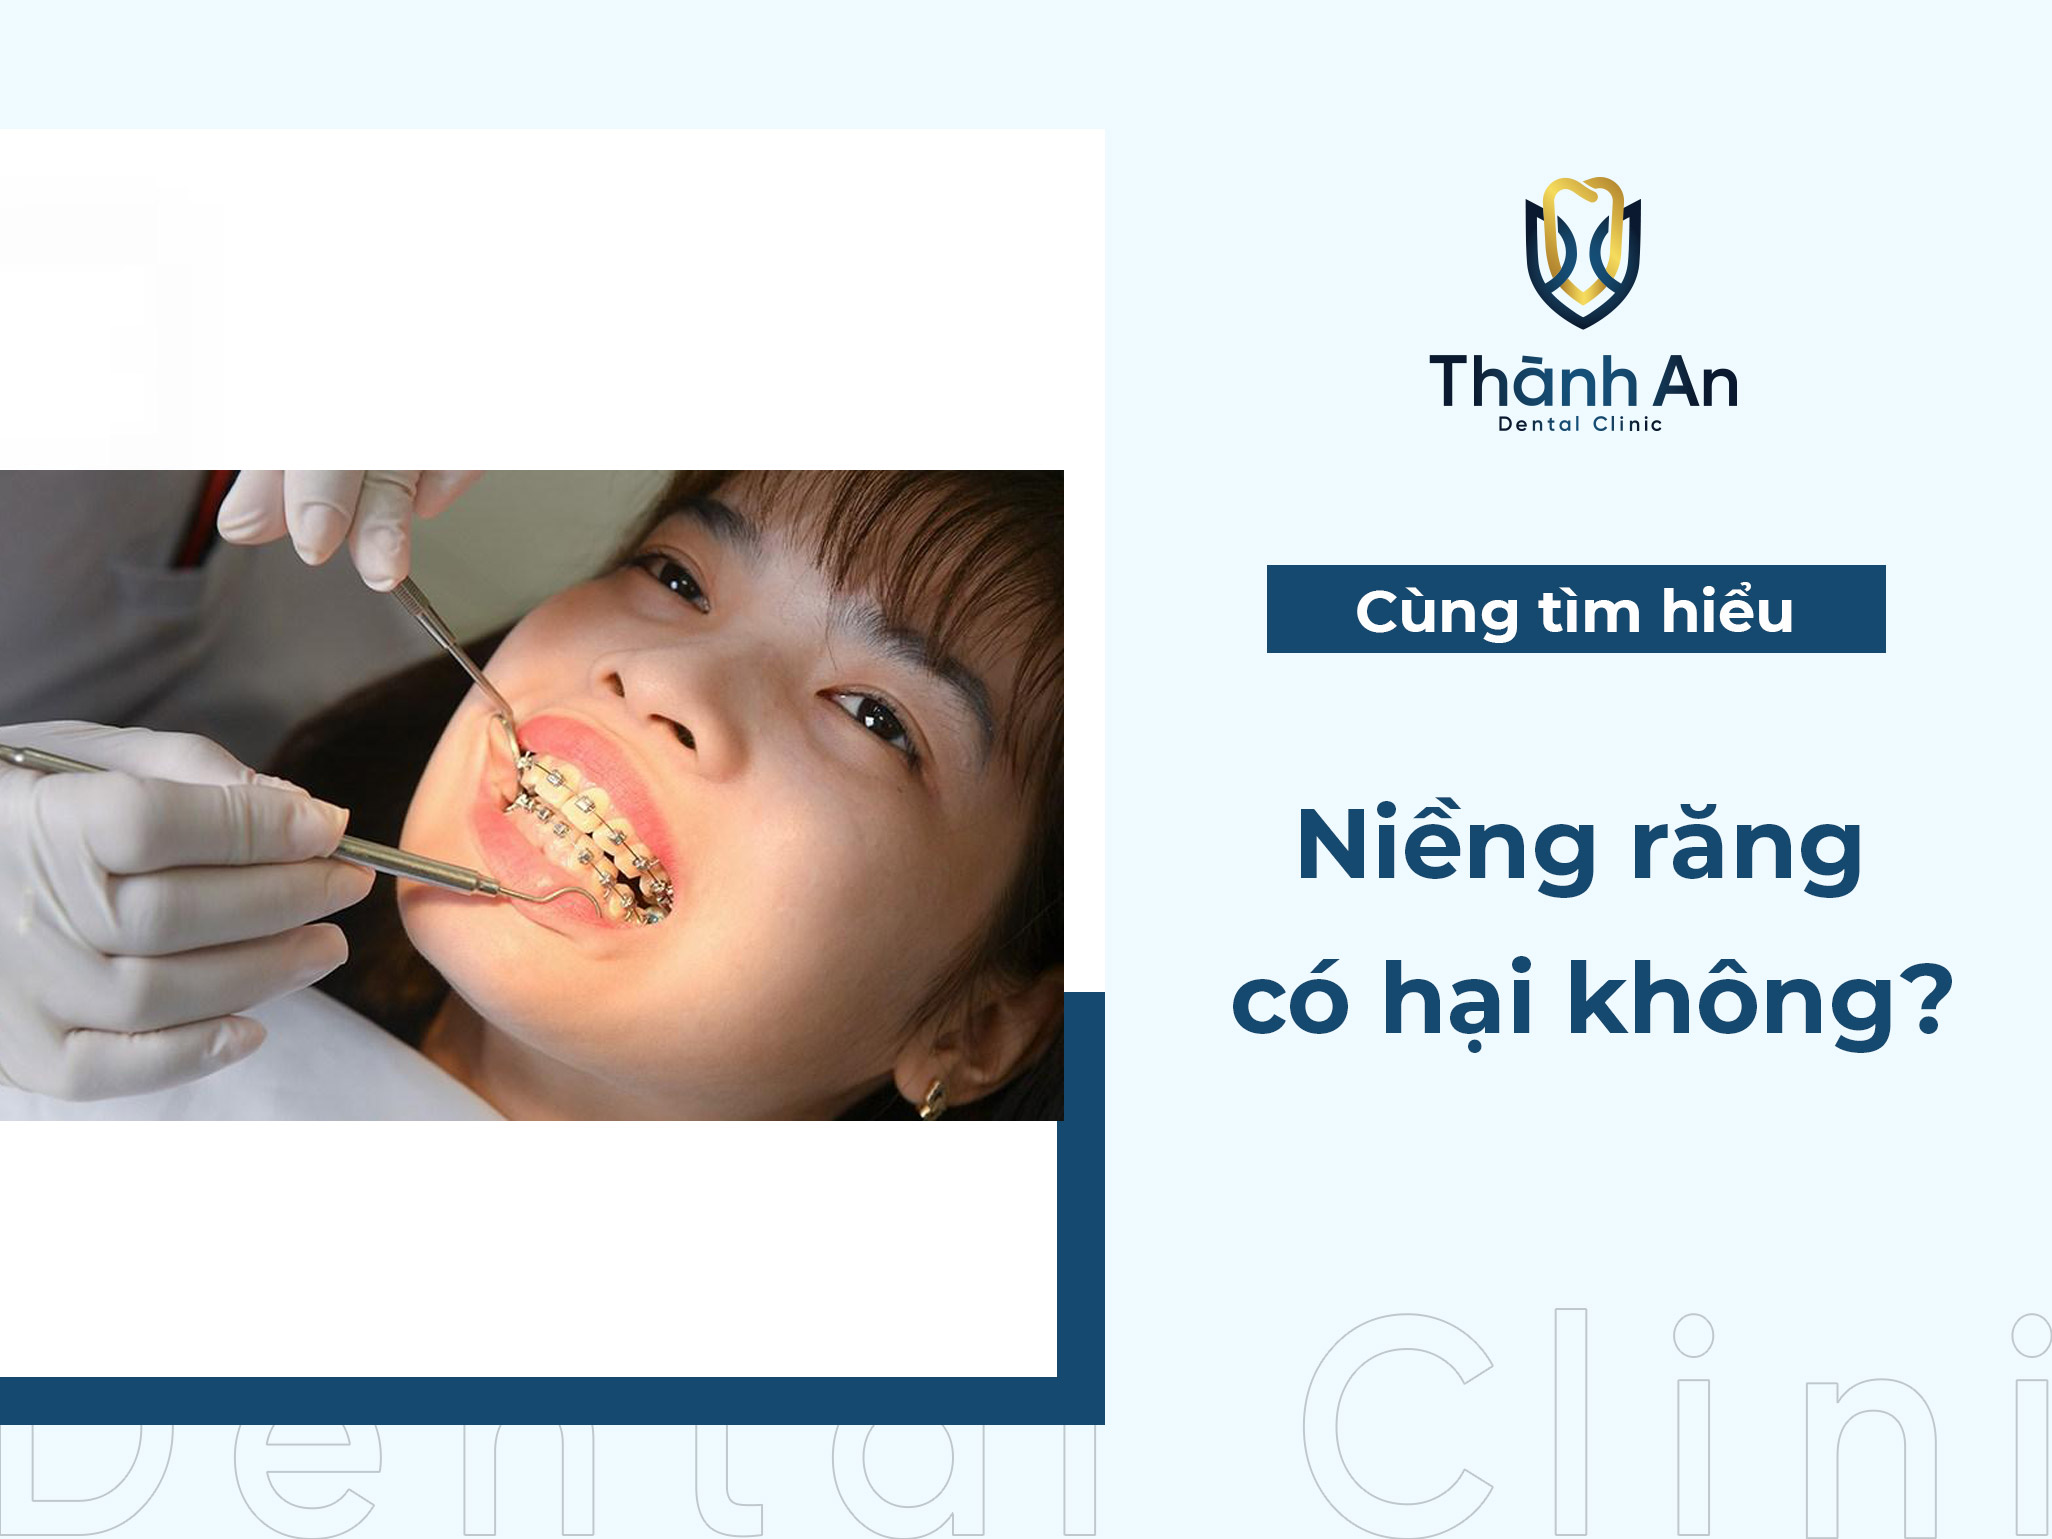 Niềng răng có hại không? Ảnh hưởng đến sức khỏe răng miệng như thế nào?